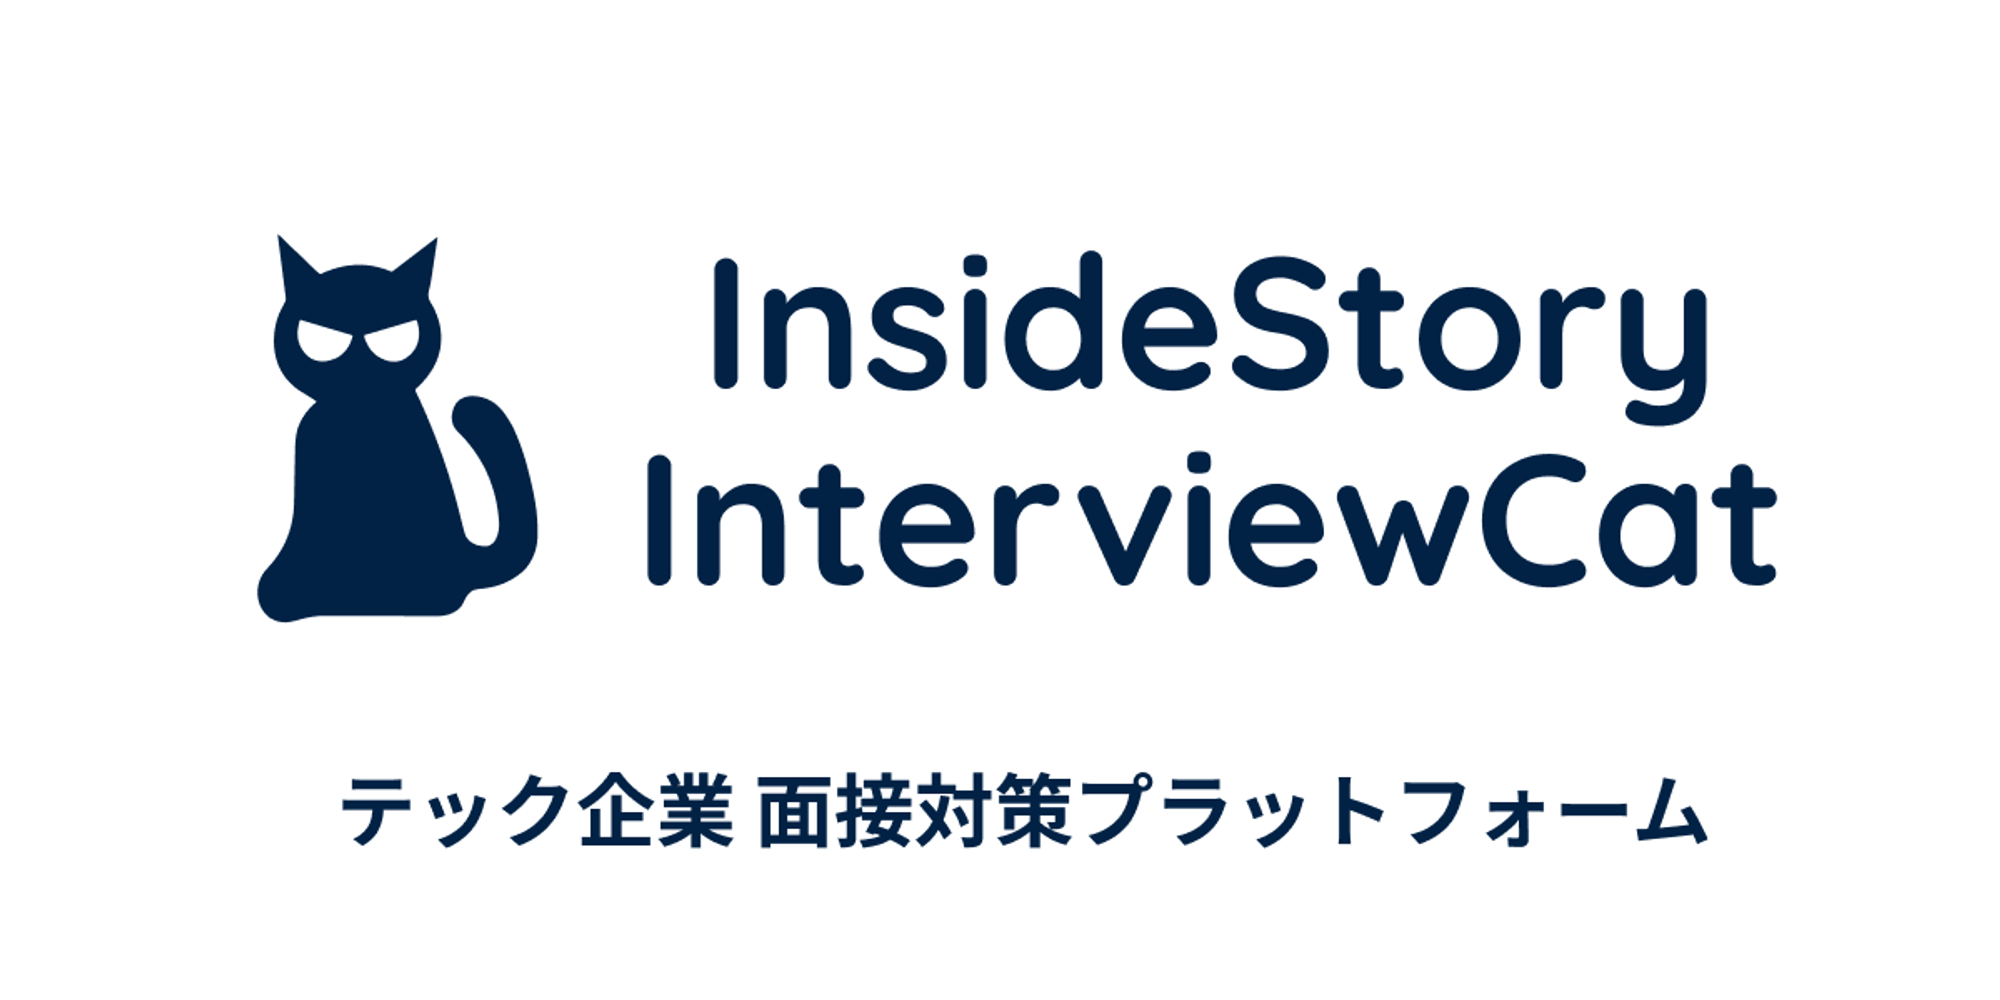 InsideStory InterviewCat | エンジニアストーリー | InterviewCat - テック企業面接対策プラットフォーム